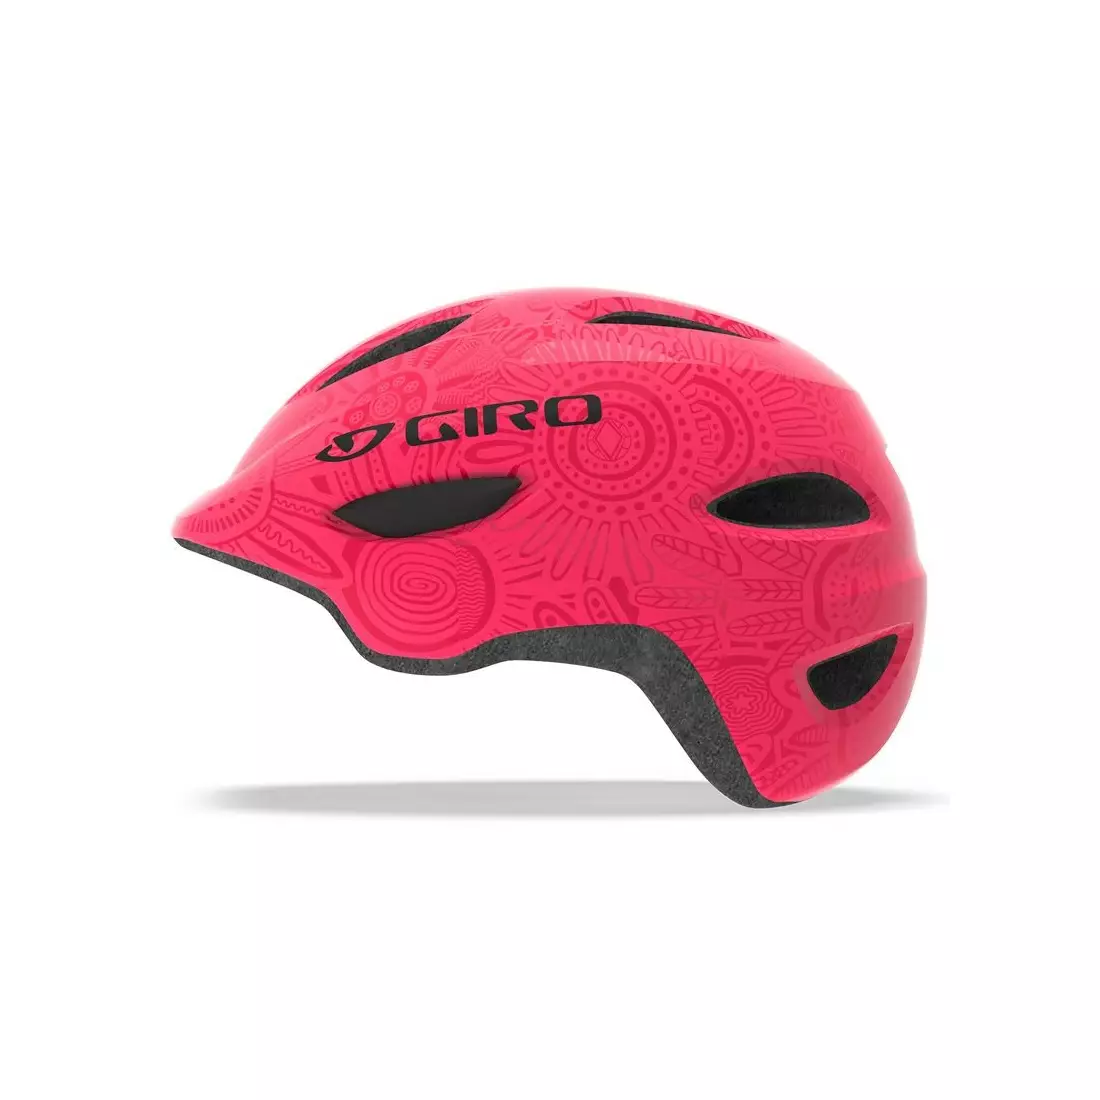 GIRO detská/juniorská cyklistická prilba scamp mips bright pink pearl GR-7102464